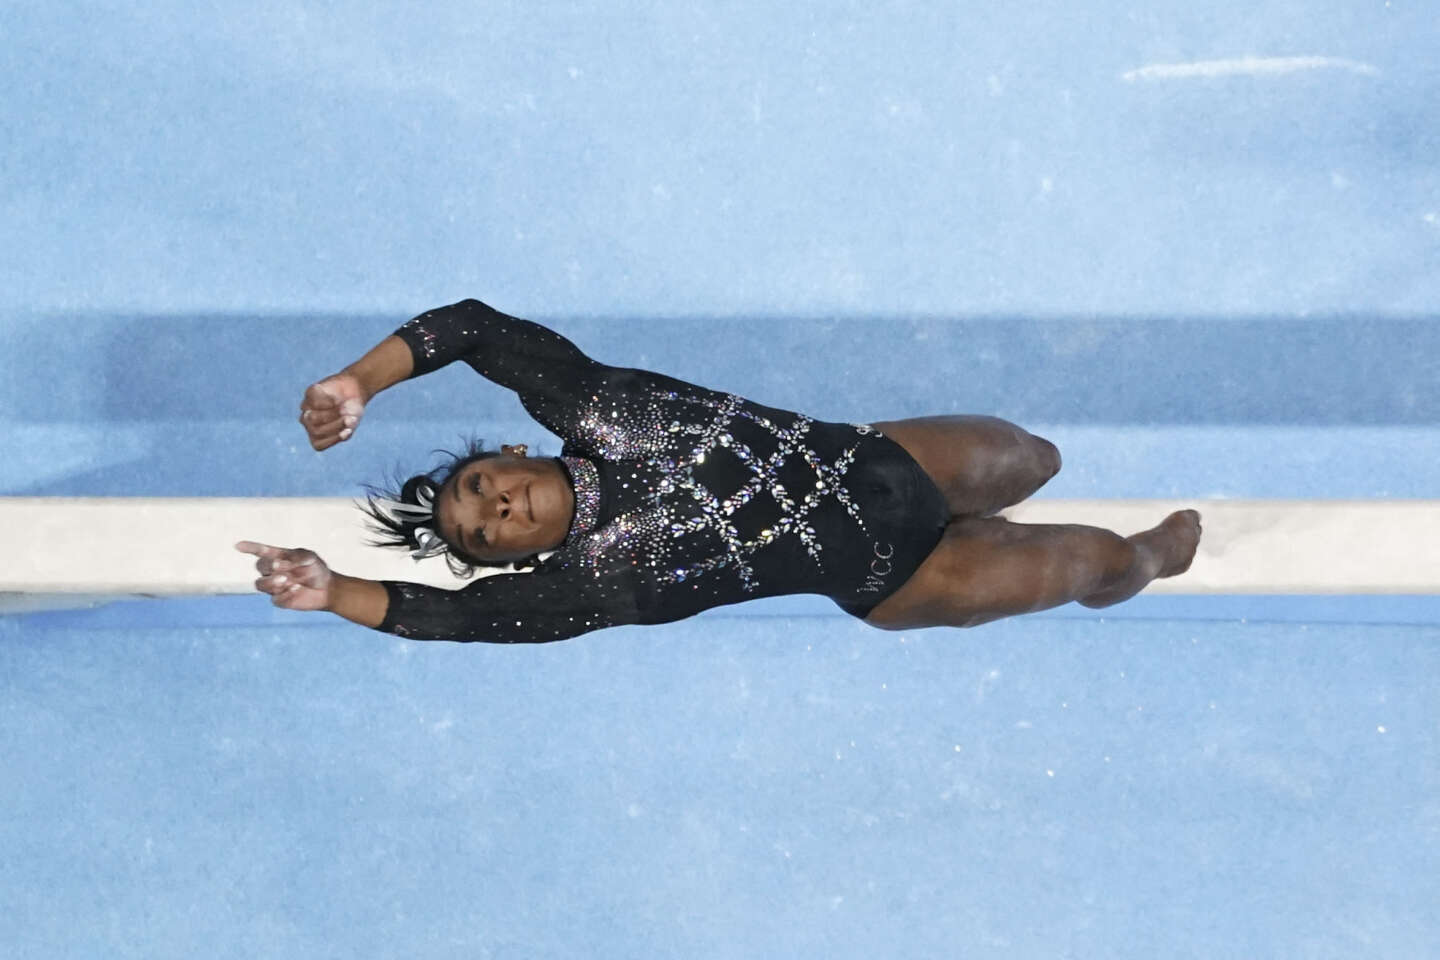 Gymnastique : Simone Biles décroche un huitième titre national, un record